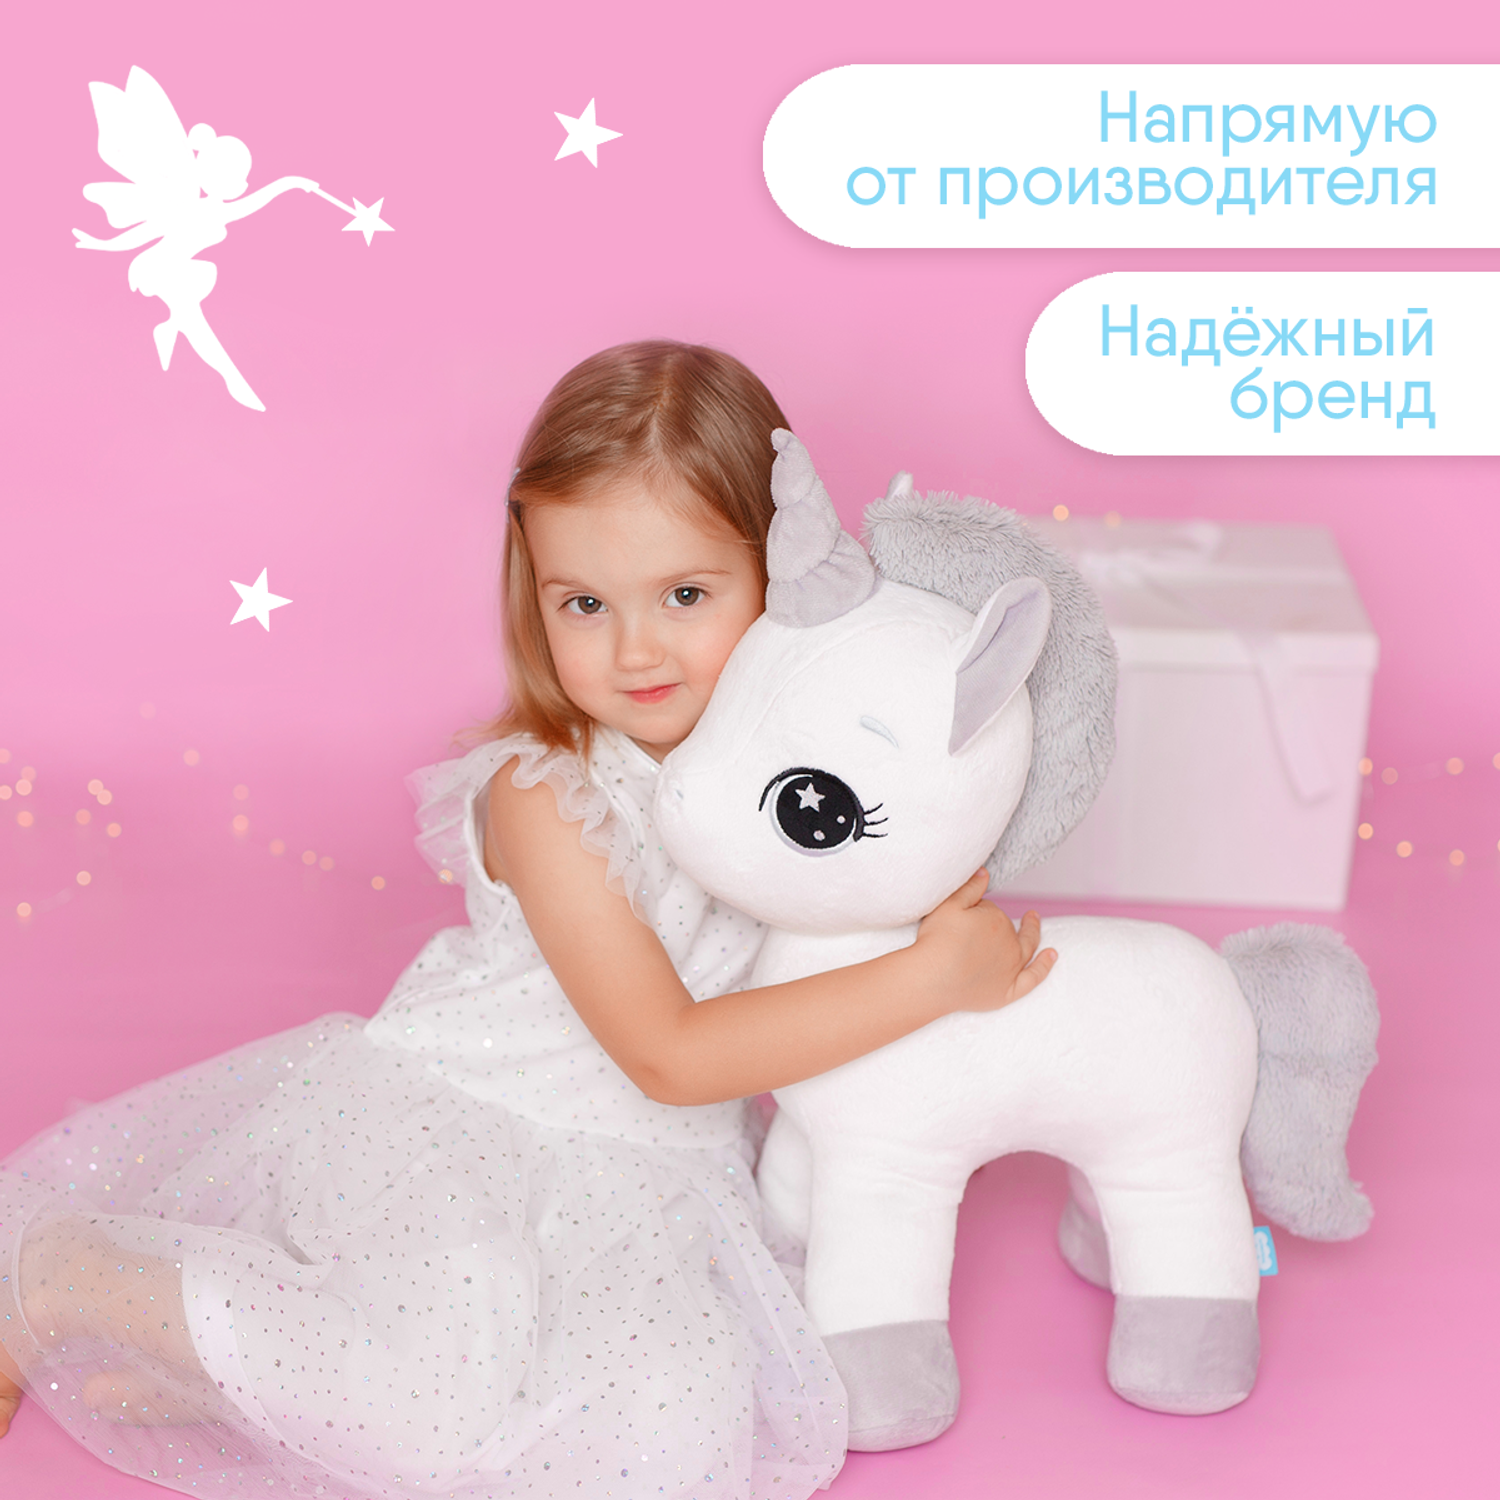 Мягкая игрушка Мякиши большая плюшевая Единорог Dream белый подушка для детей пони подарок - фото 6